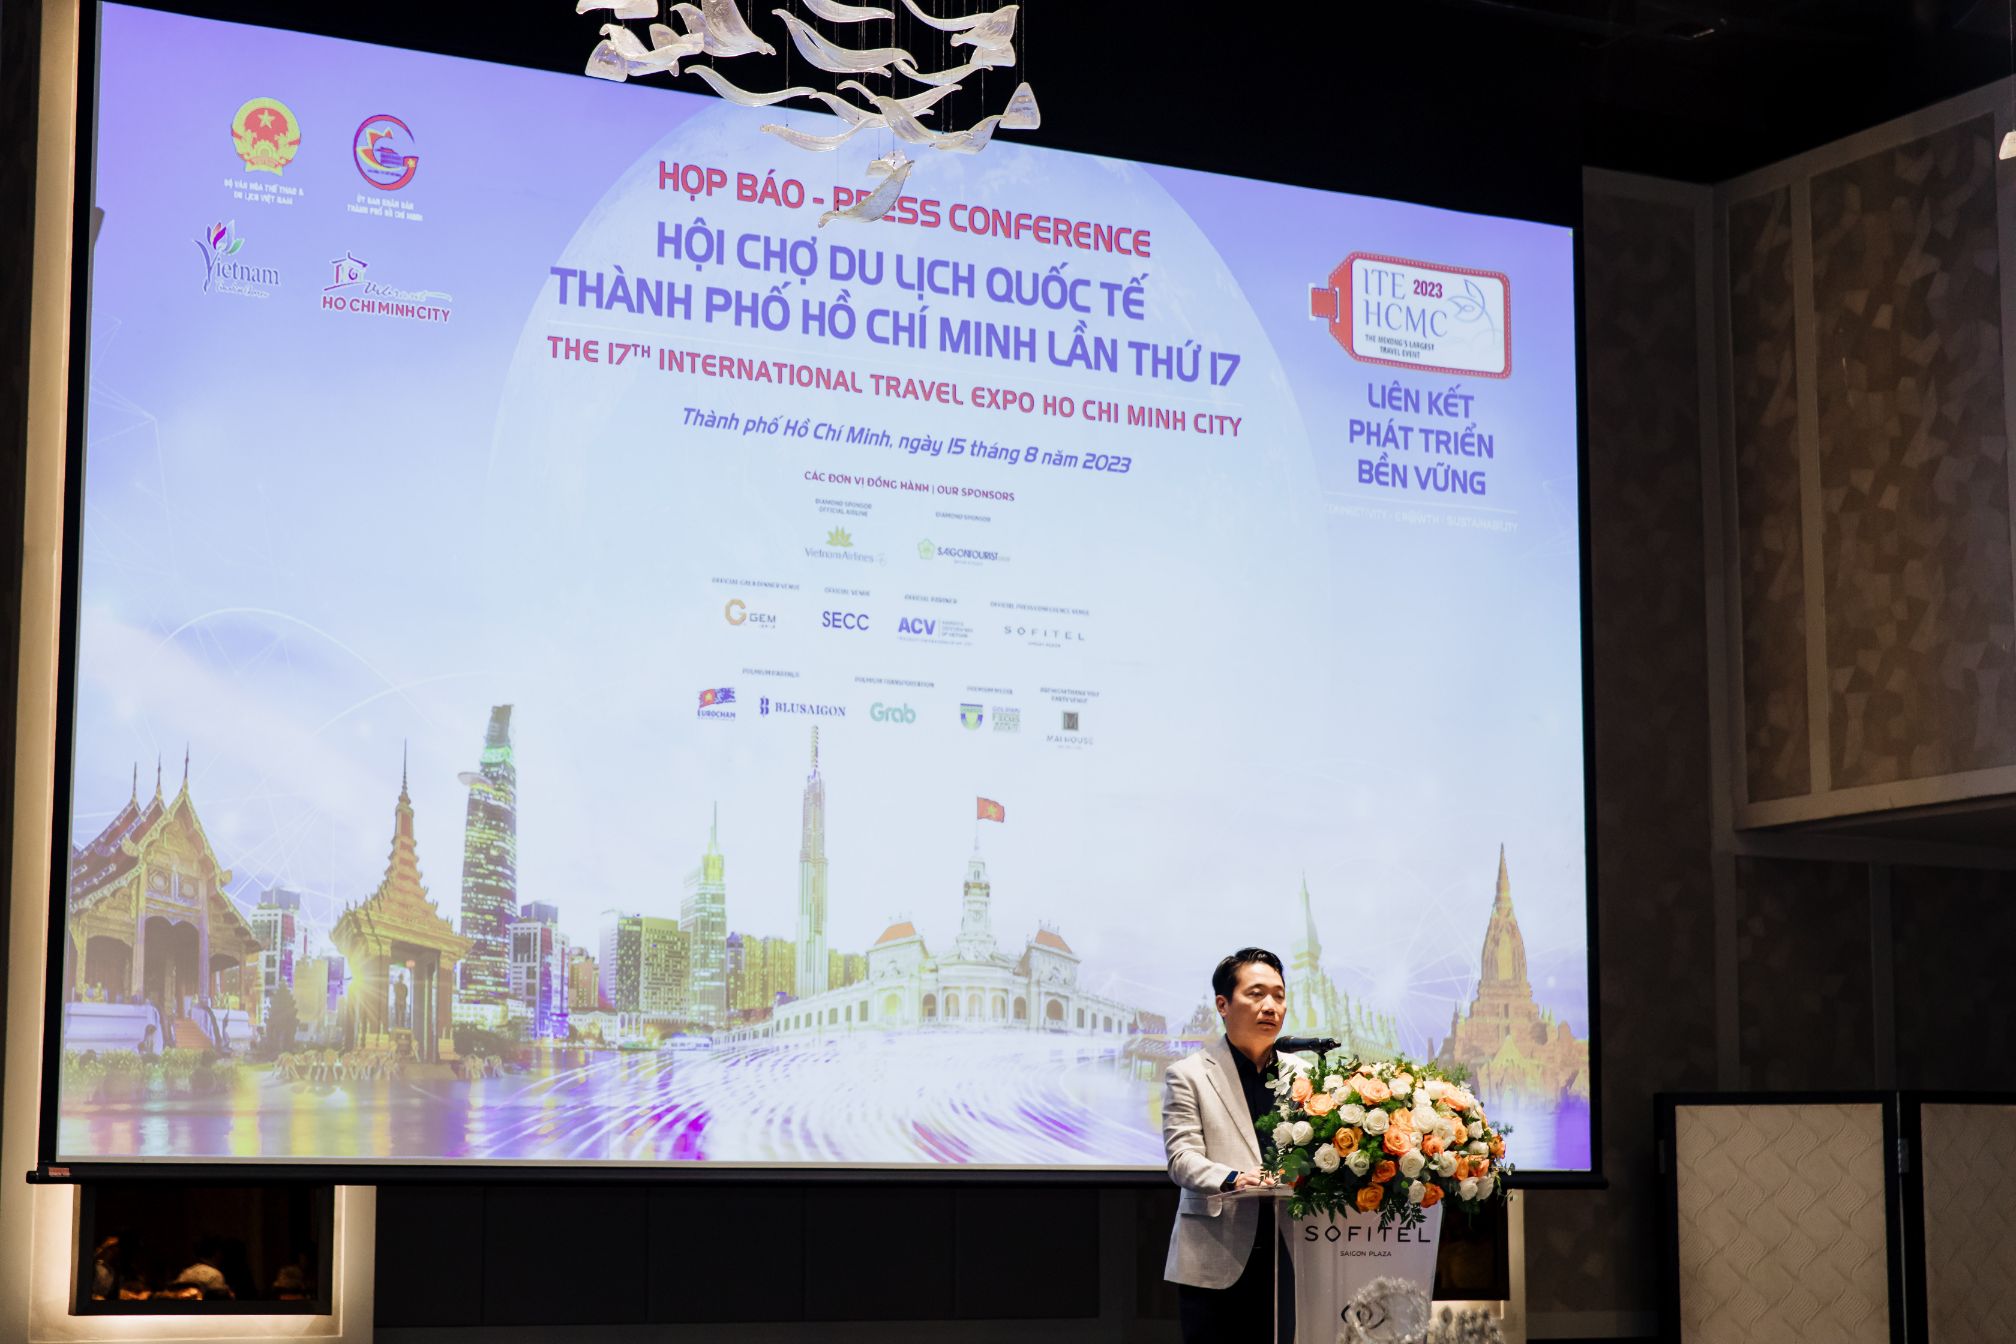 Hội chợ ITE HCMC 2023 2 Hội chợ ITE HCMC 2023: Cơ hội để du lịch Việt bắt thời cơ, tăng tốc phát triển